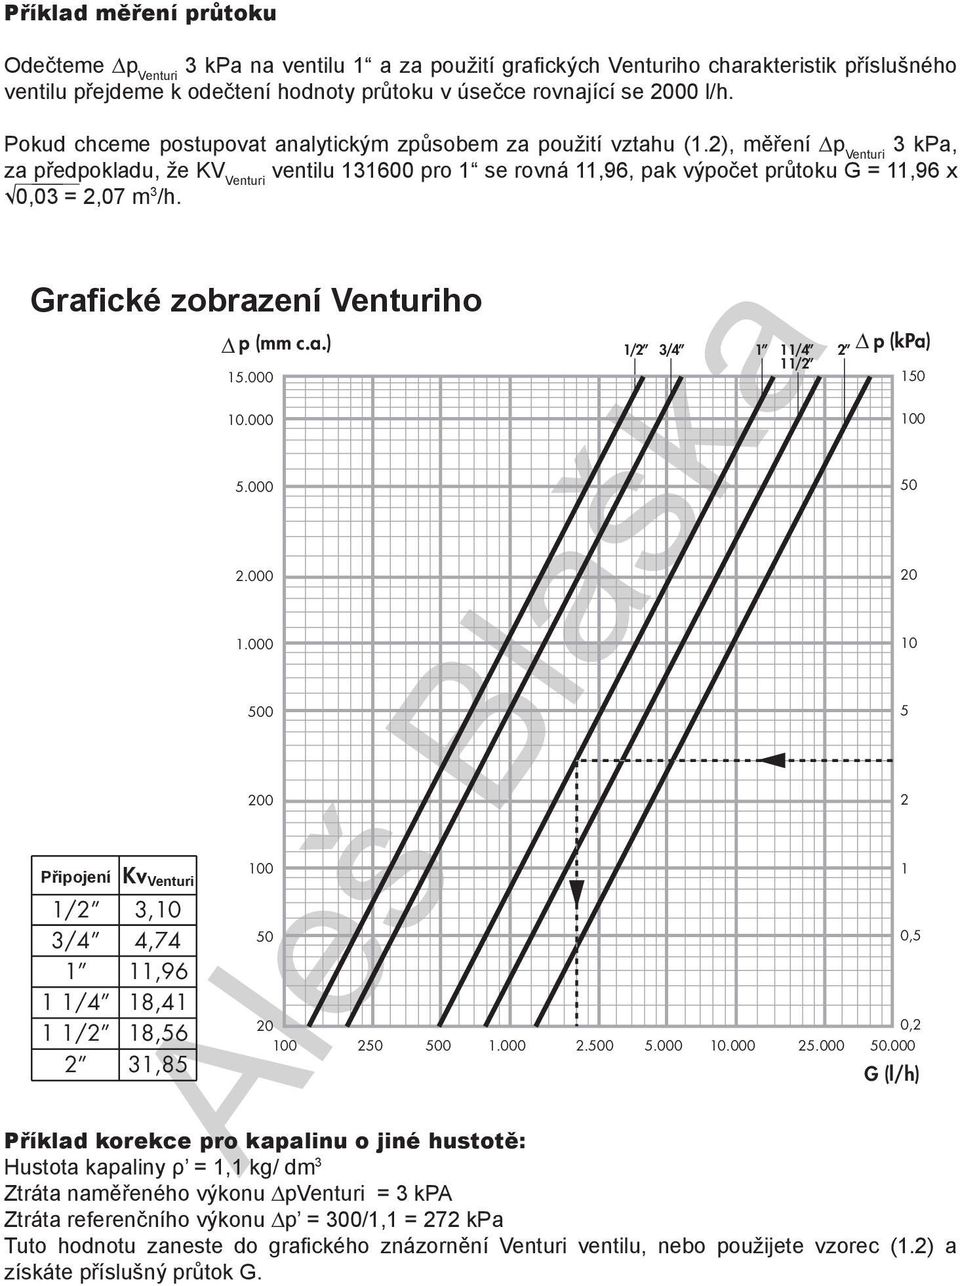 Grafické zobrazení Venturiho Připojení Kv / / / / Venturi,0,7,96 8, 8,6,8 p (mm c.a.).000 0.000.000.000.000 00 00 0 0 / / / / 0 00.000.00.000 0.000.000 p (kpa) 0 0 0 0 0, 0, 0.